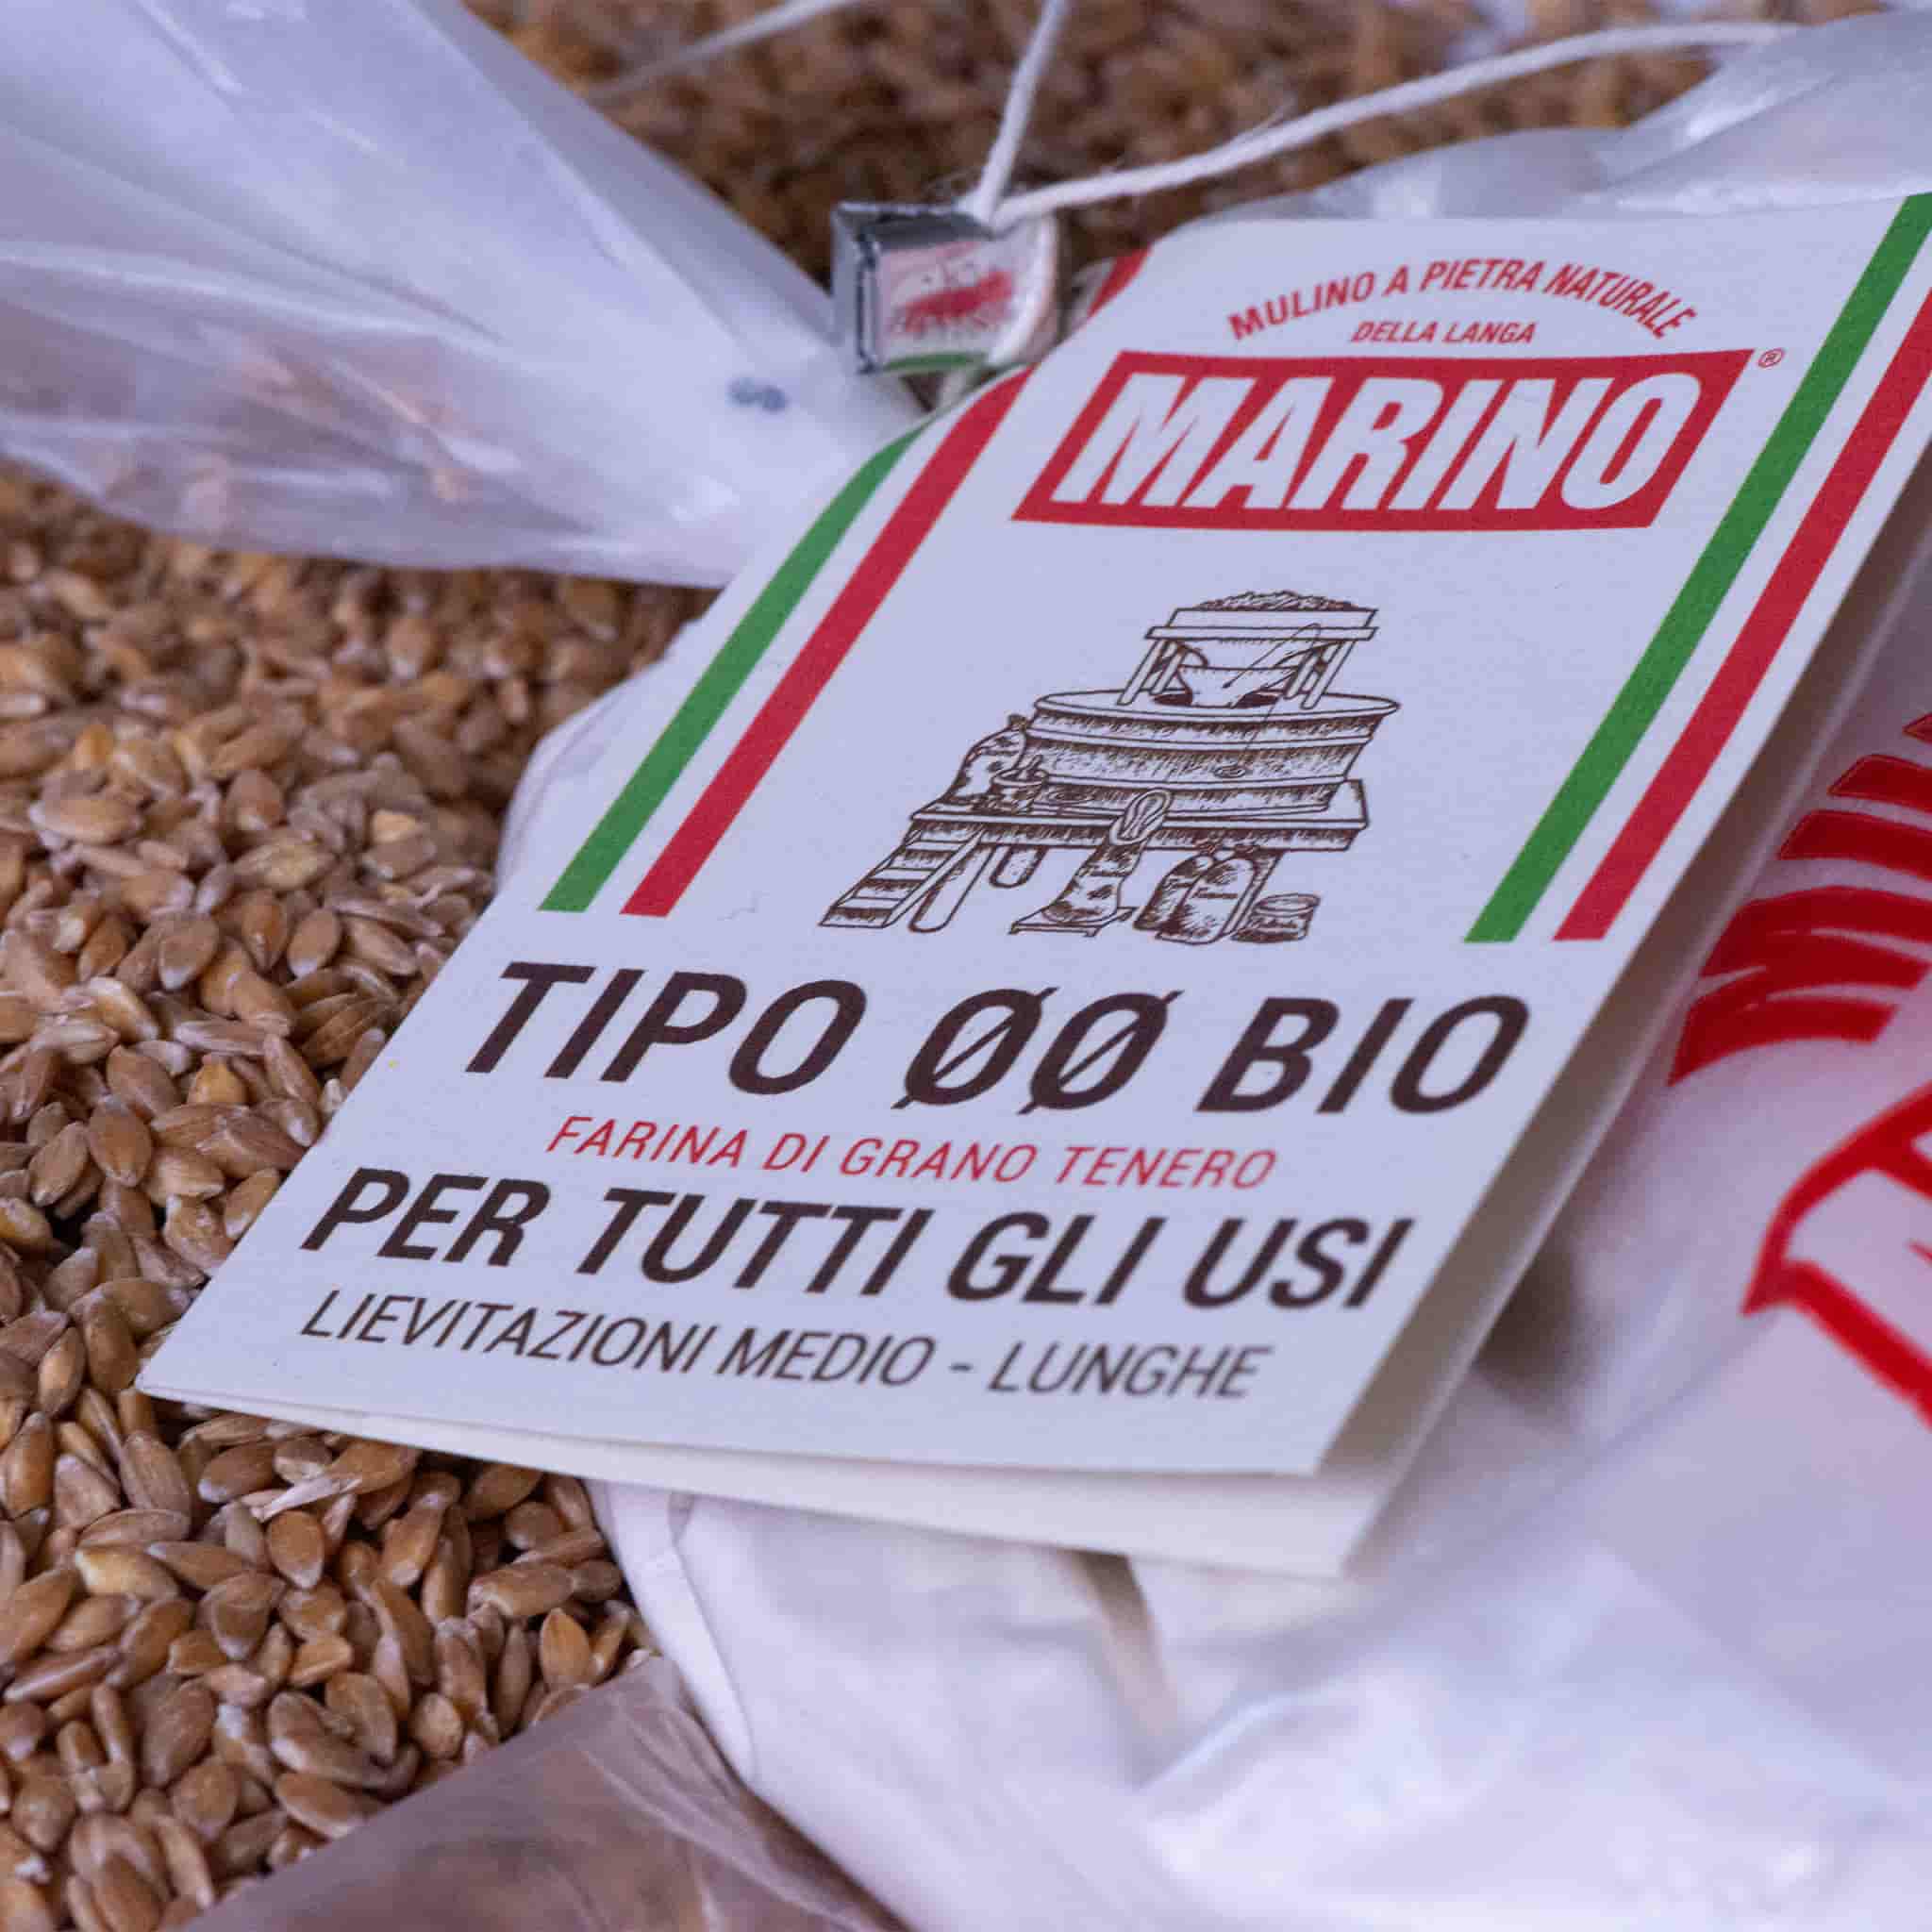 Mulino Marino Organic 00 Flour 1kg